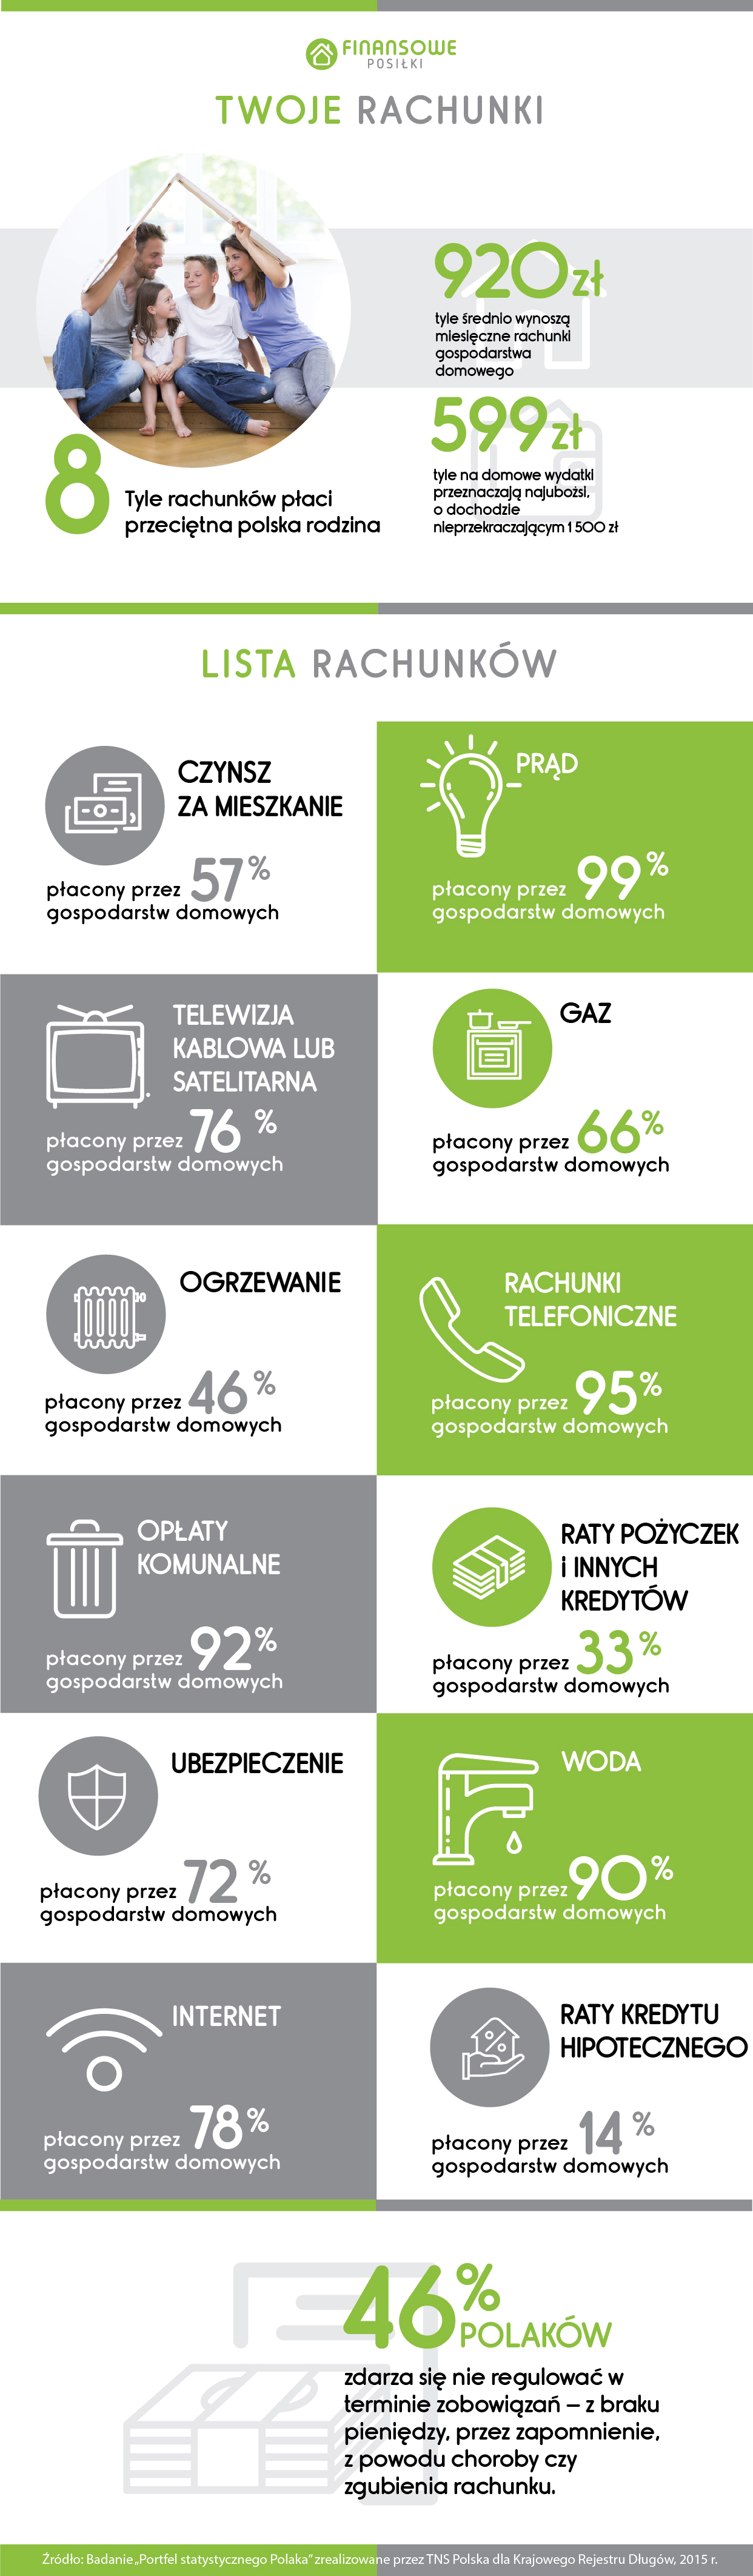 infografika_cz2